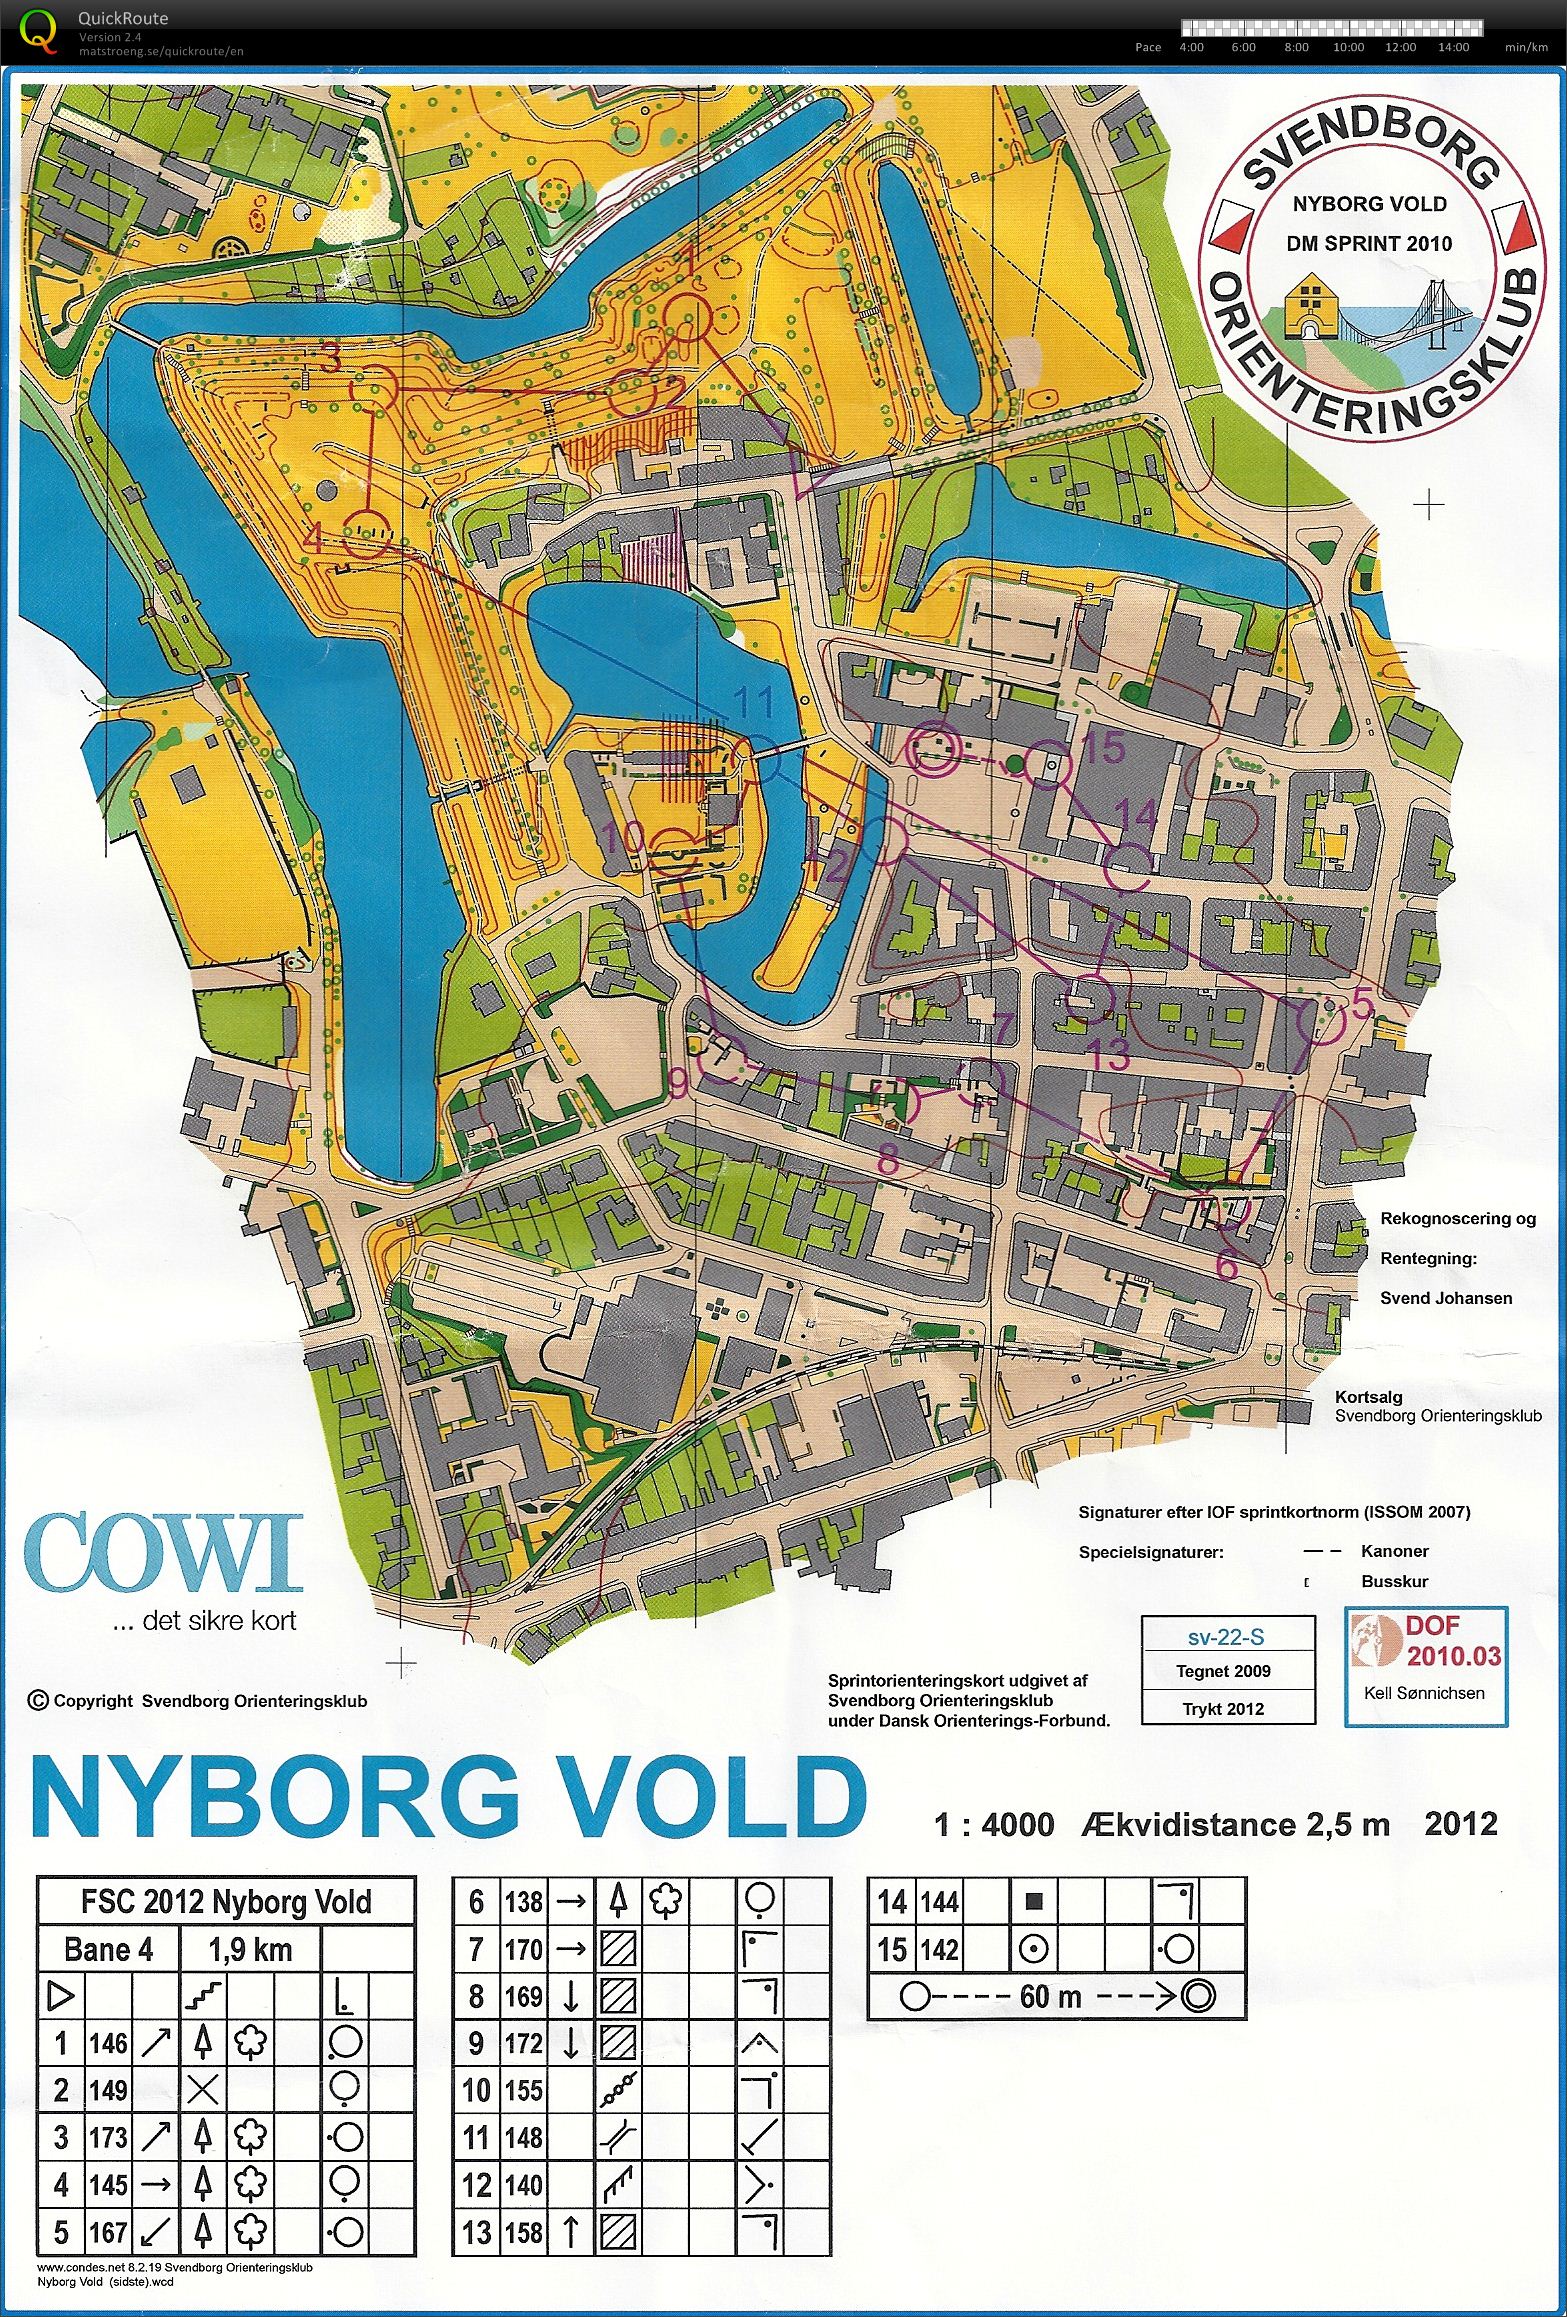 Nyborg Vold, Bane 4, D45, Lene S.N. (28-05-2012)